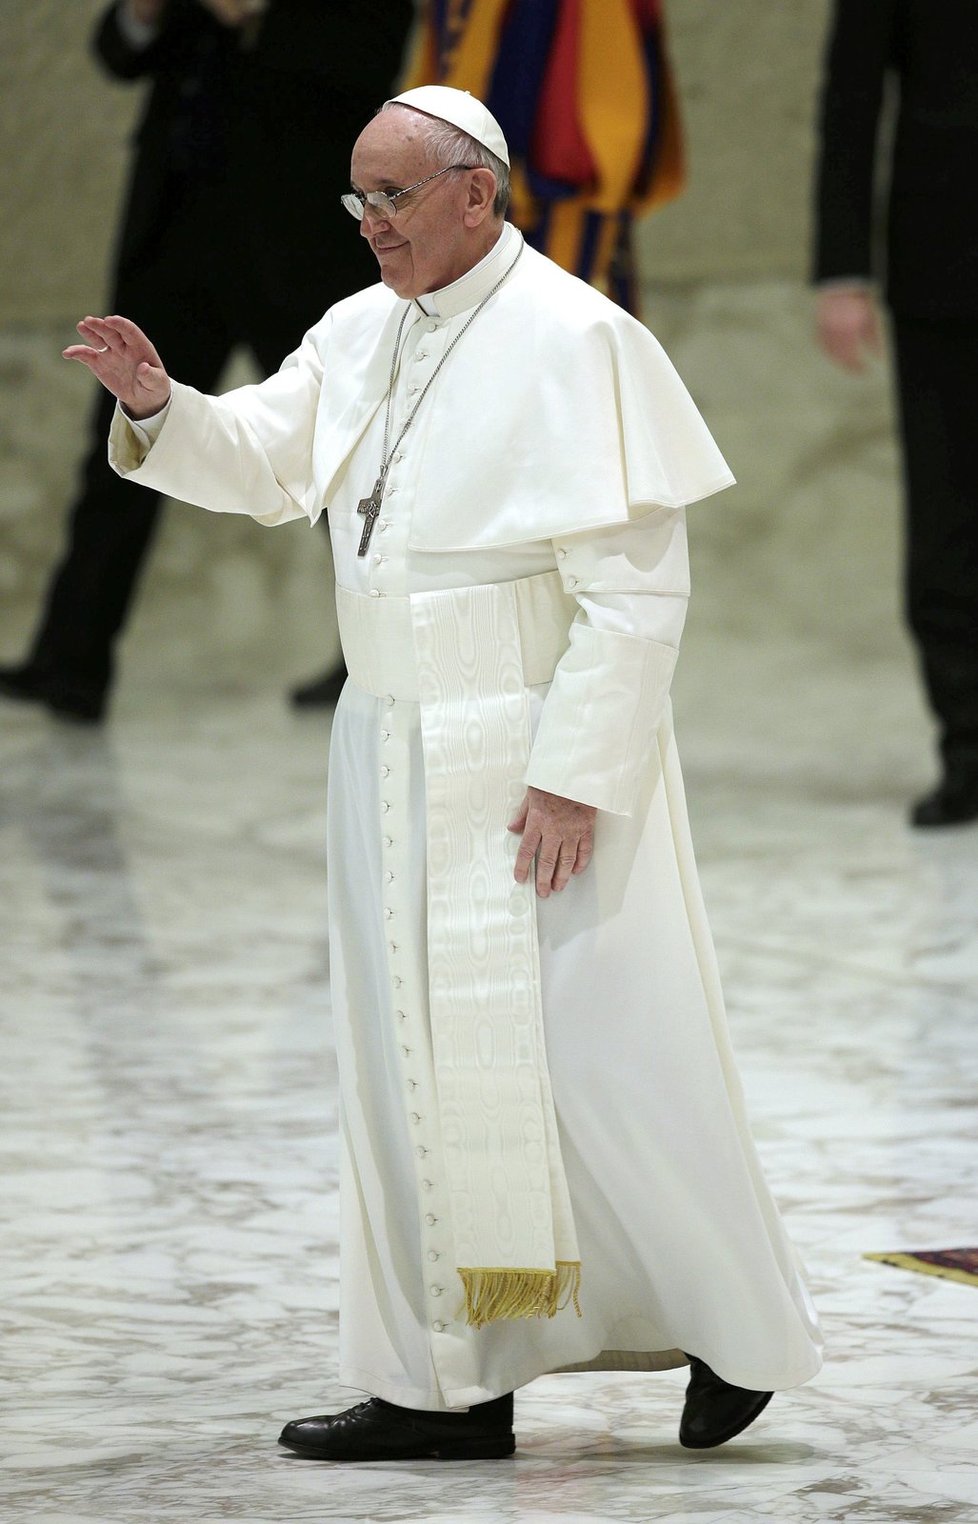 Papež František přichází na setkání s novináři